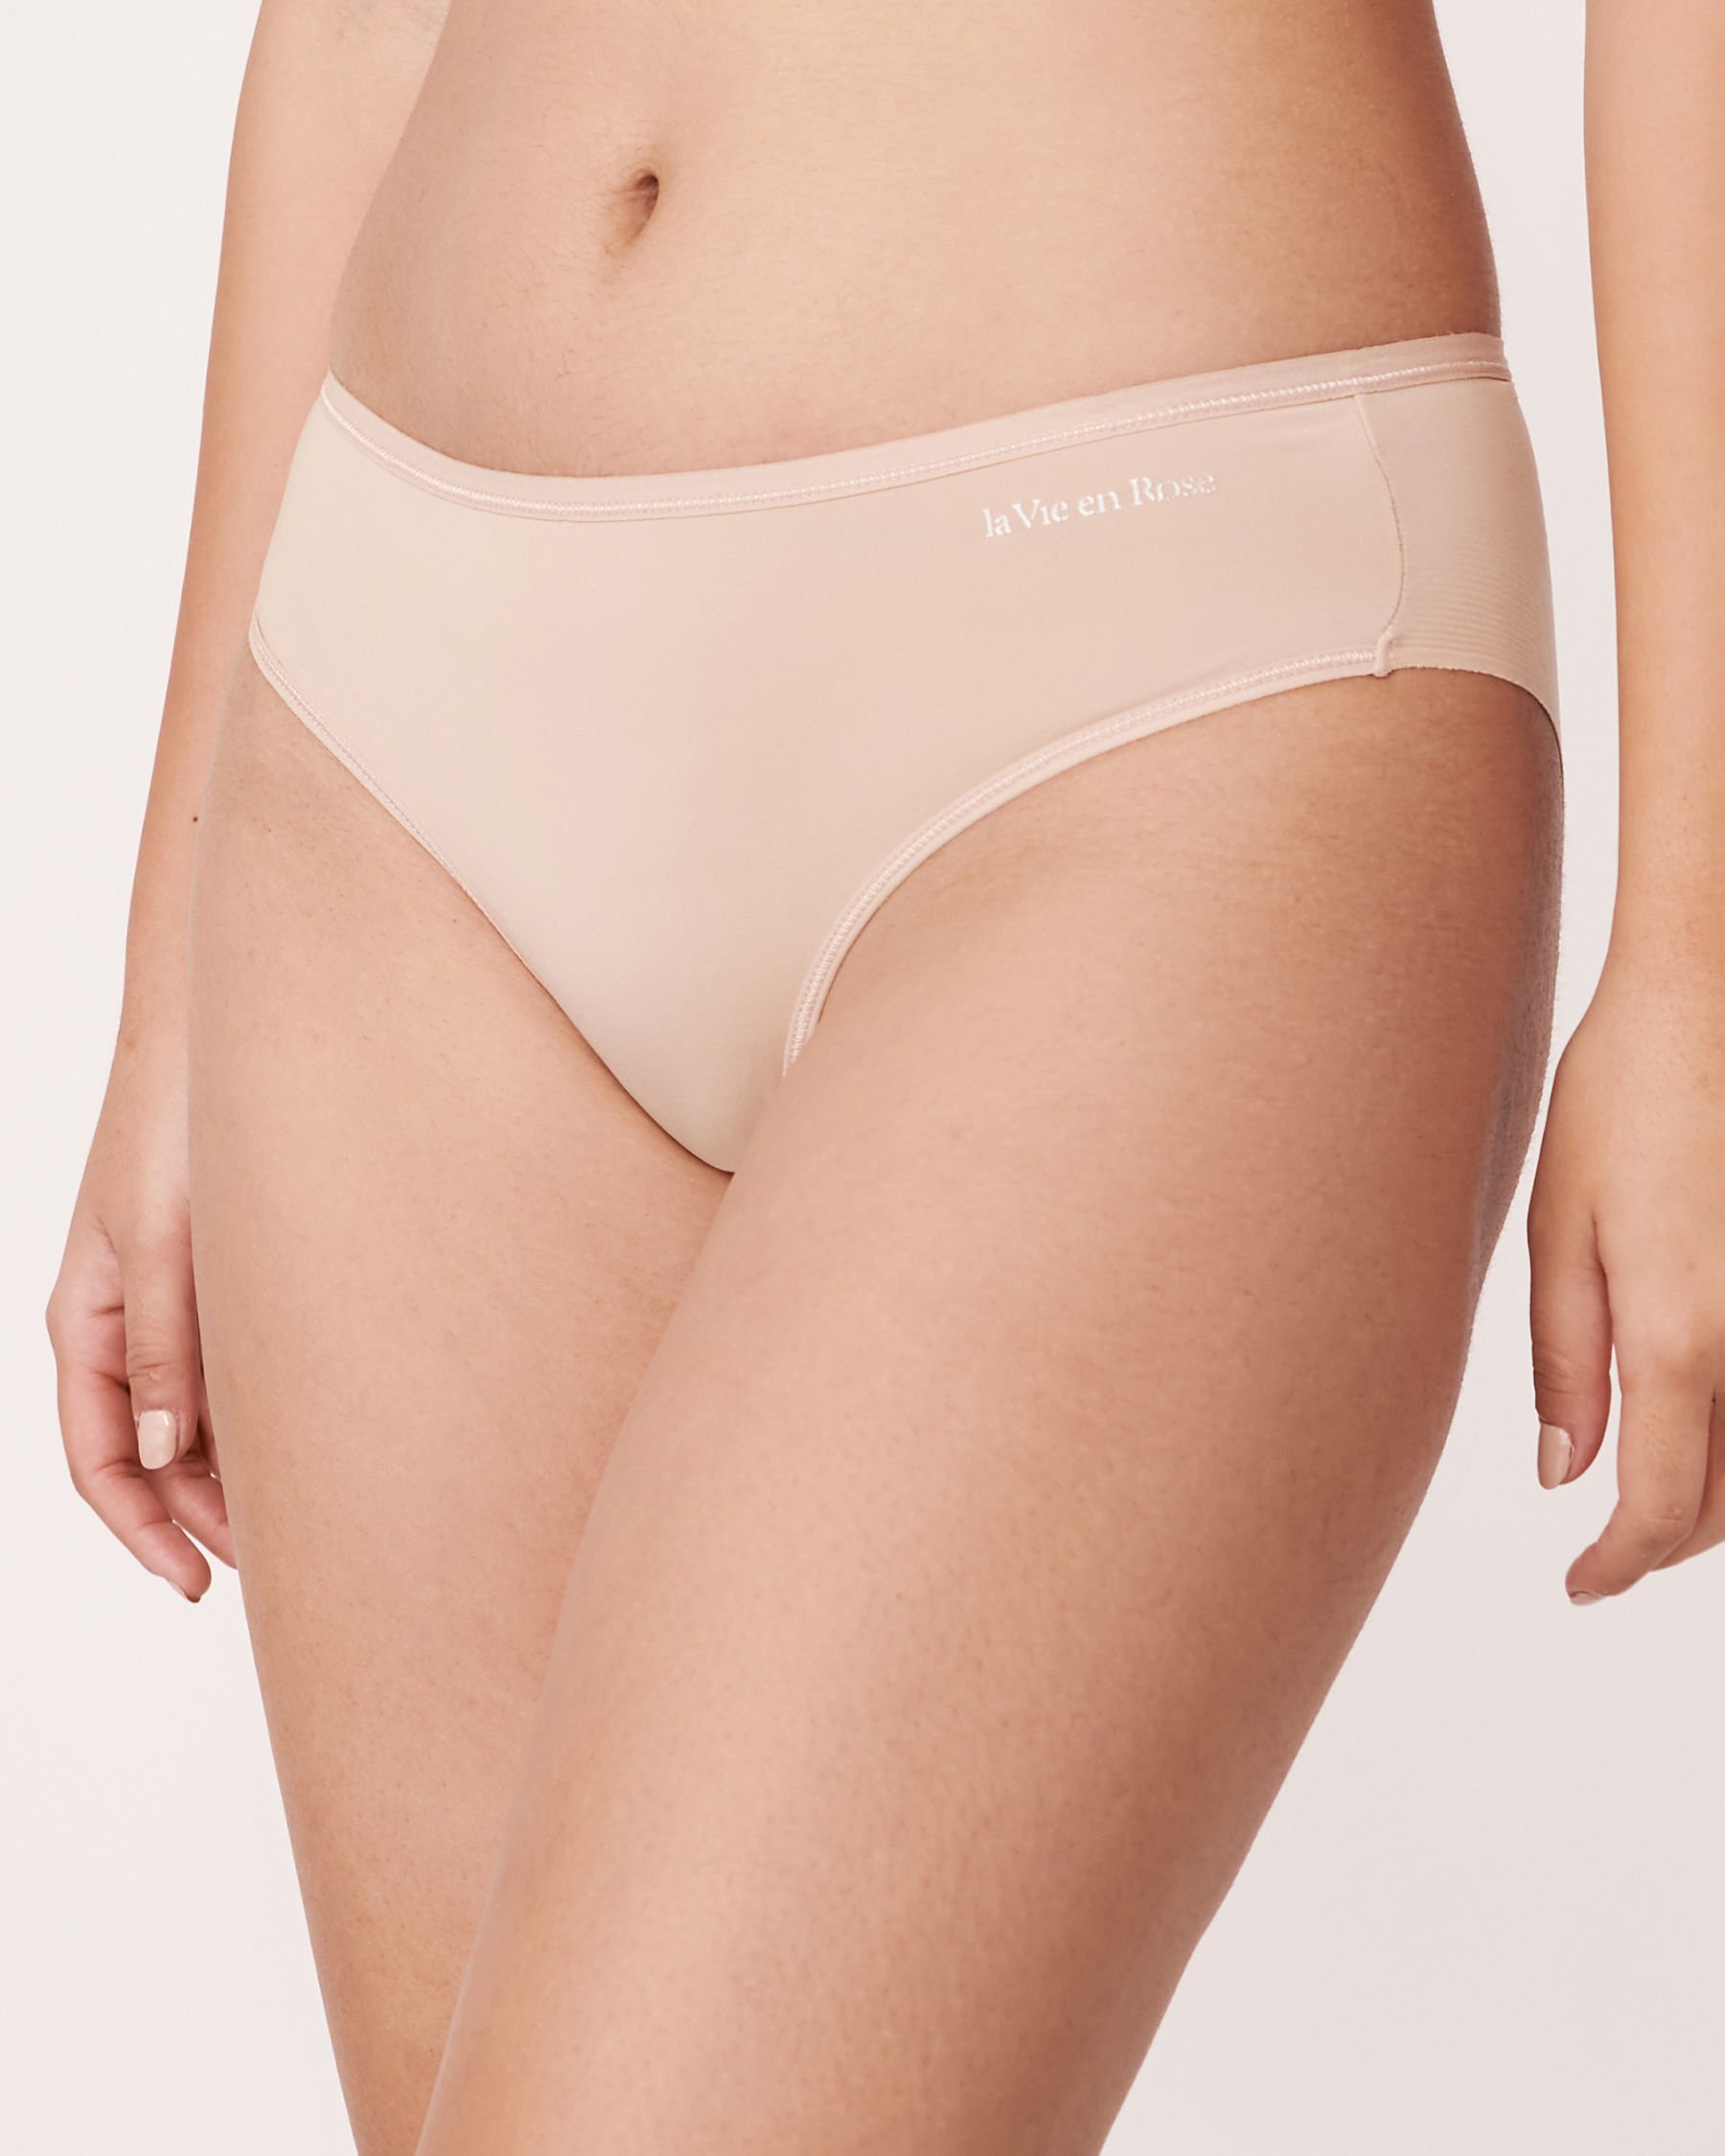 LA VIE EN ROSE Microfiber Sleek Back Bikini Panty Neutral 169-122-0-00 - View1